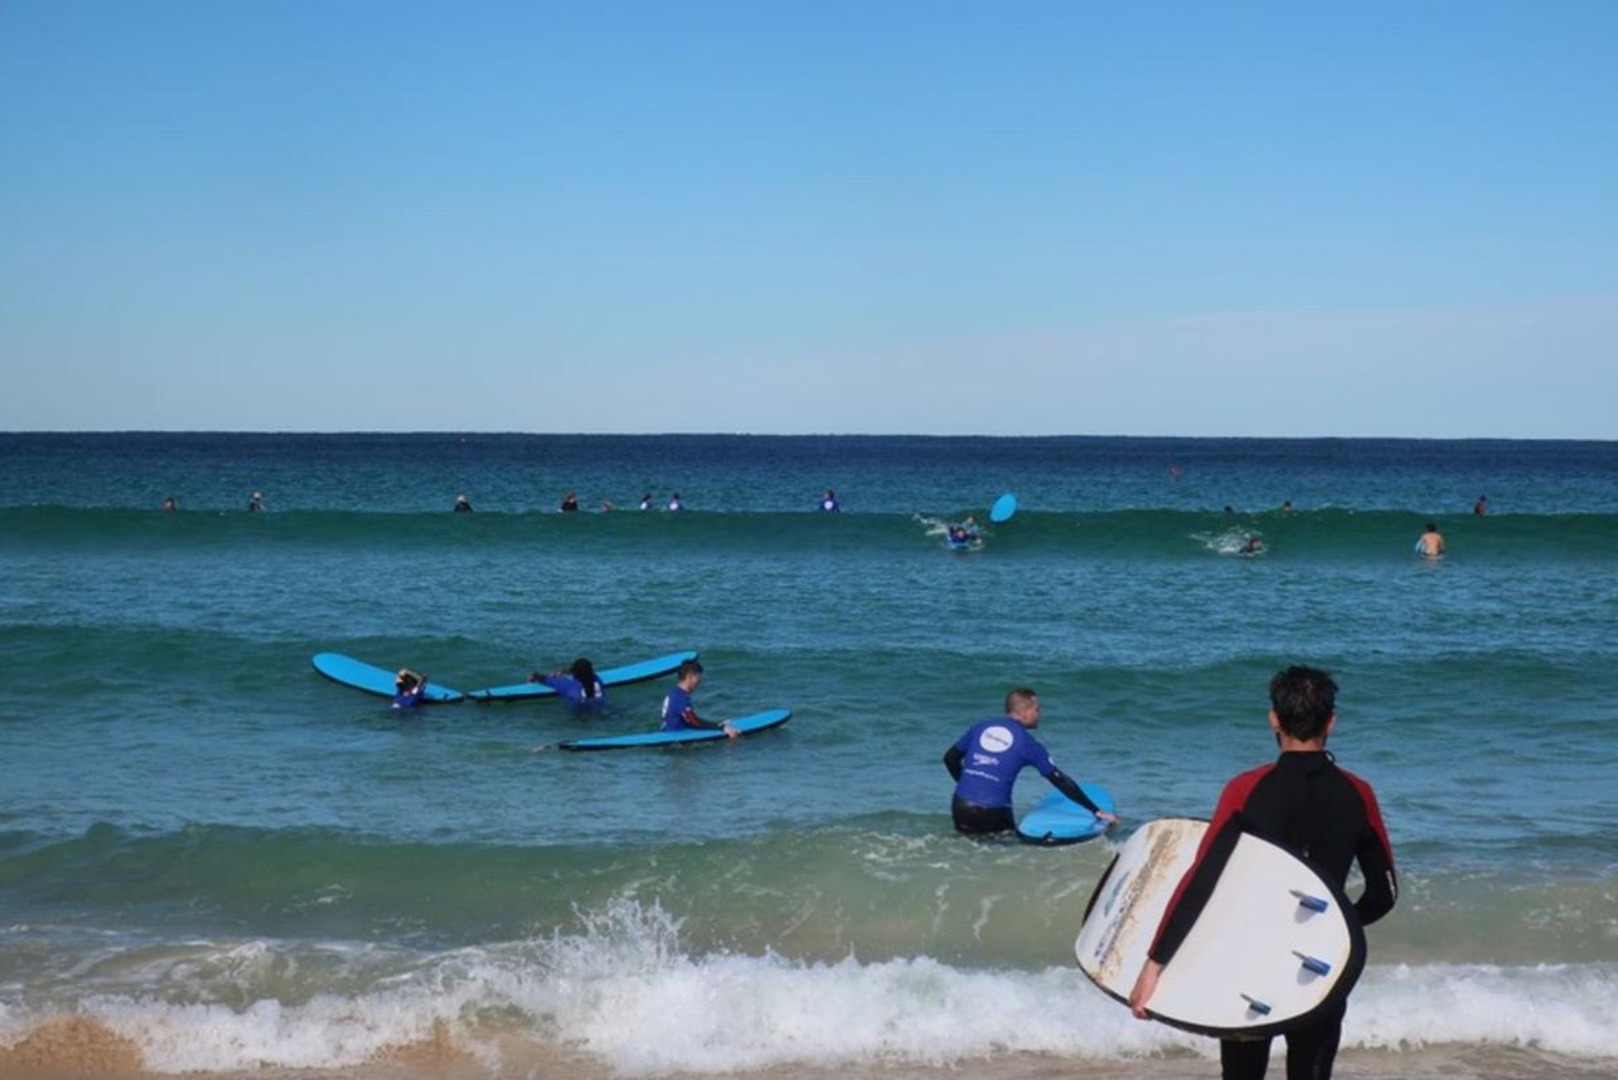 澳洲邦迪海灘2小時小團體衝浪課程